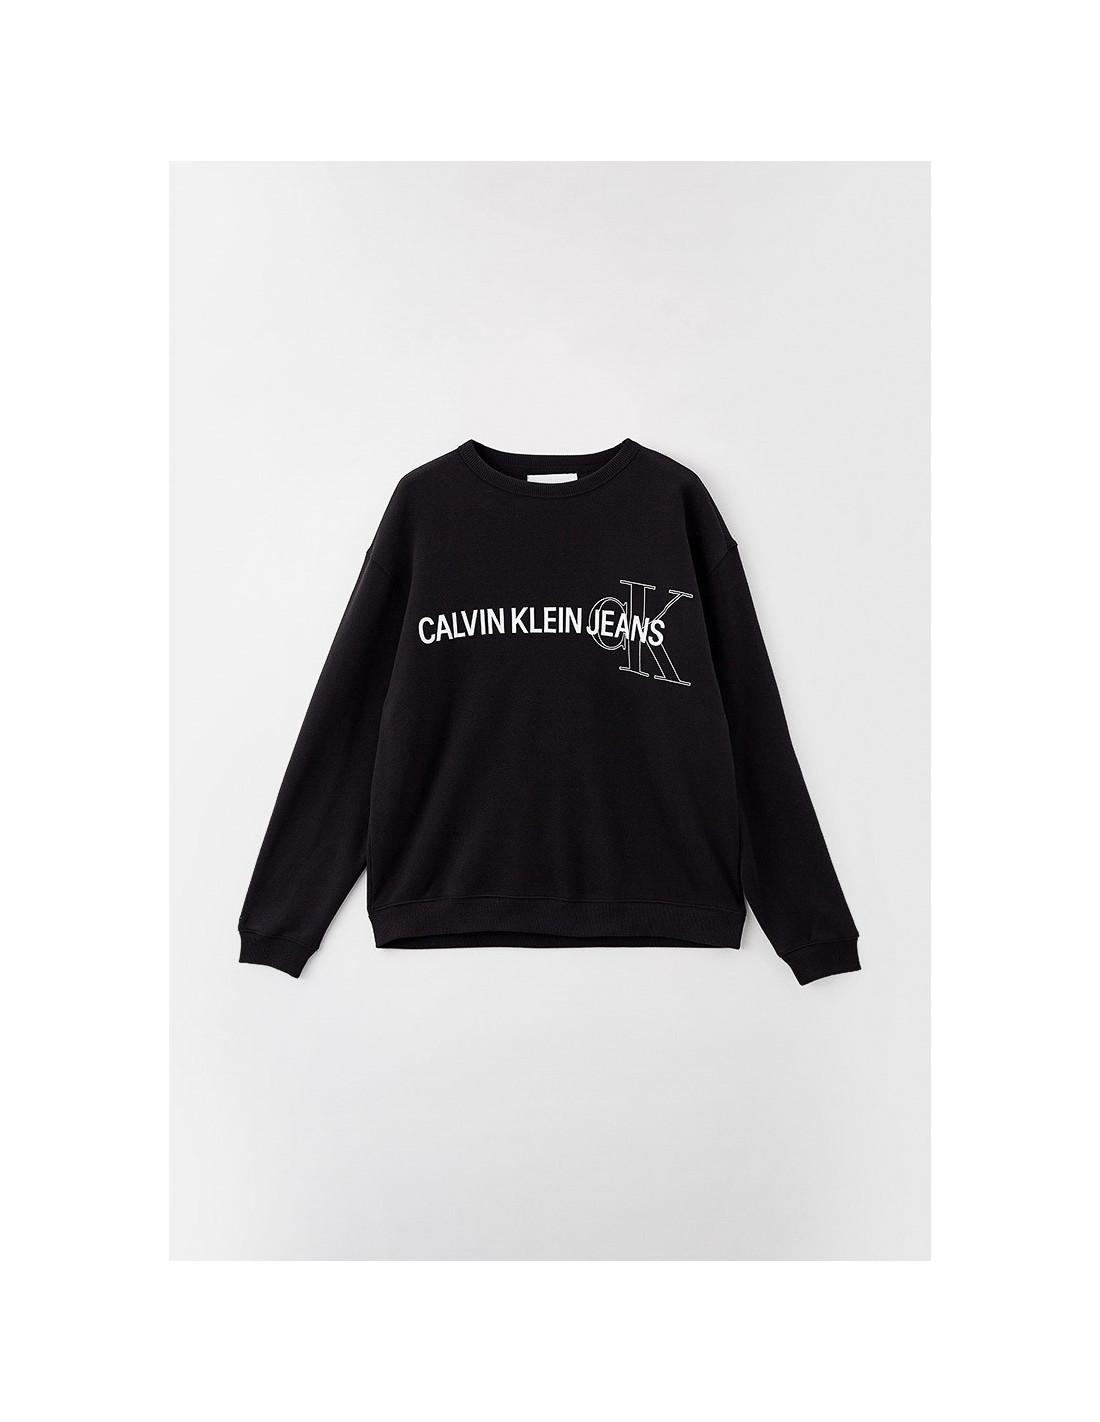 Herren-Sweatshirt 3XL Plus Calvin Instit Klein Schwarz Schwarz Logo Farbe in Taglia